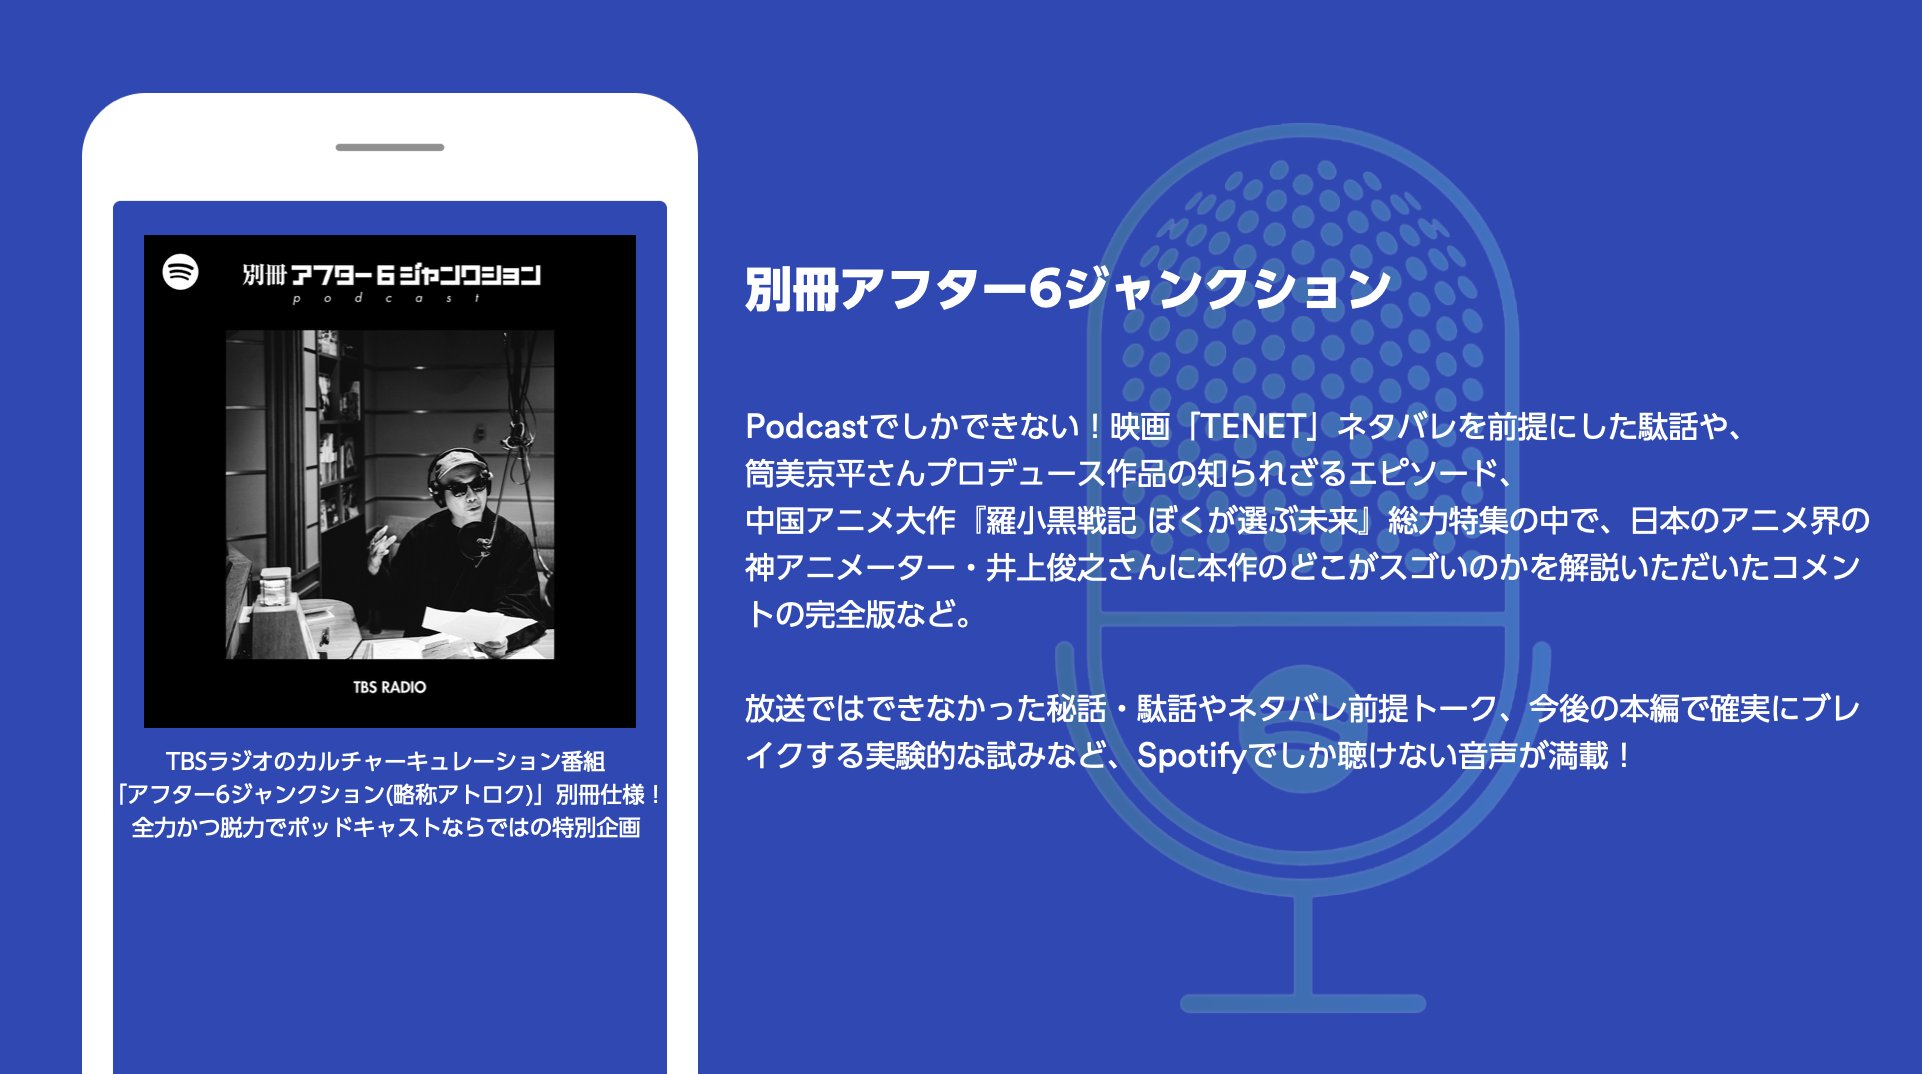 Spotify Japan Spotify限定 別冊アフター6ジャンクション 配信中 ライムスター宇多丸さんがパーソナリティを務める Tbsラジオ アフター6ジャンクション の別冊仕様 T Co Ldzklohnjr アーカイブとあわせてお楽しみください